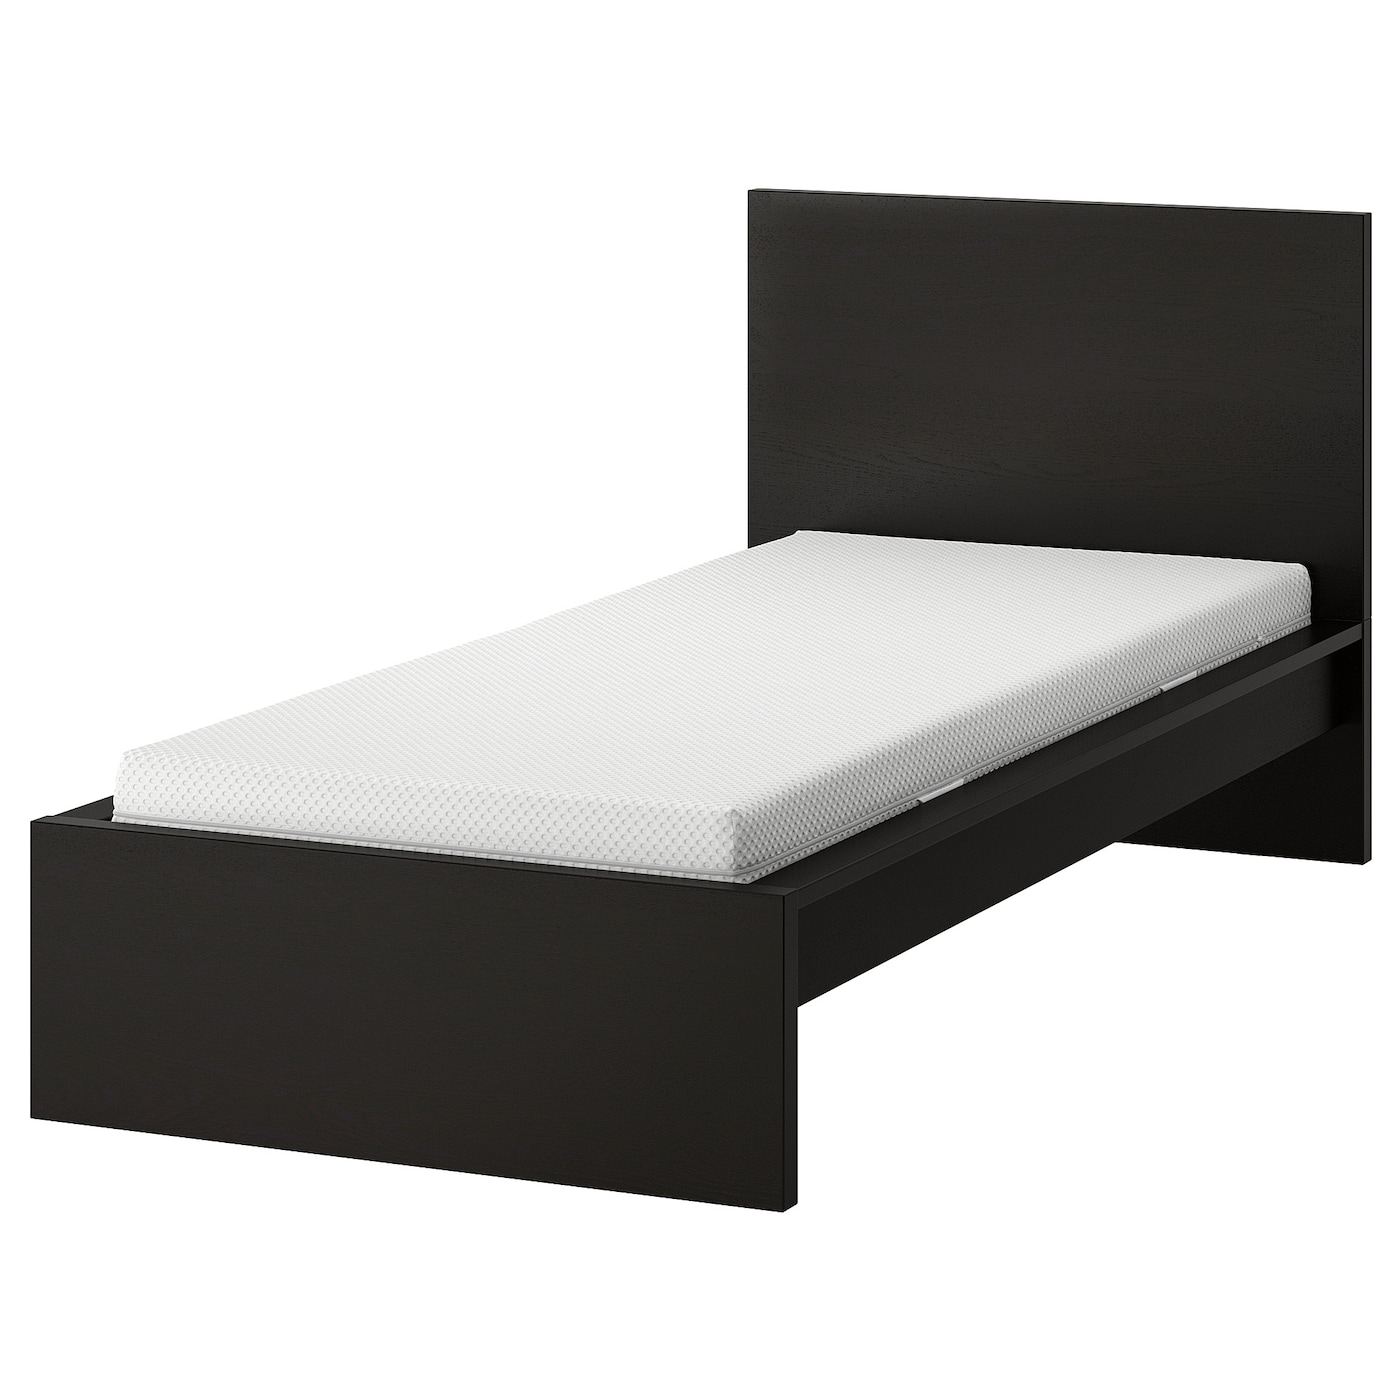 Кровать - IKEA MALM, 200х90 см, матрас жесткий, черный, МАЛЬМ ИКЕА